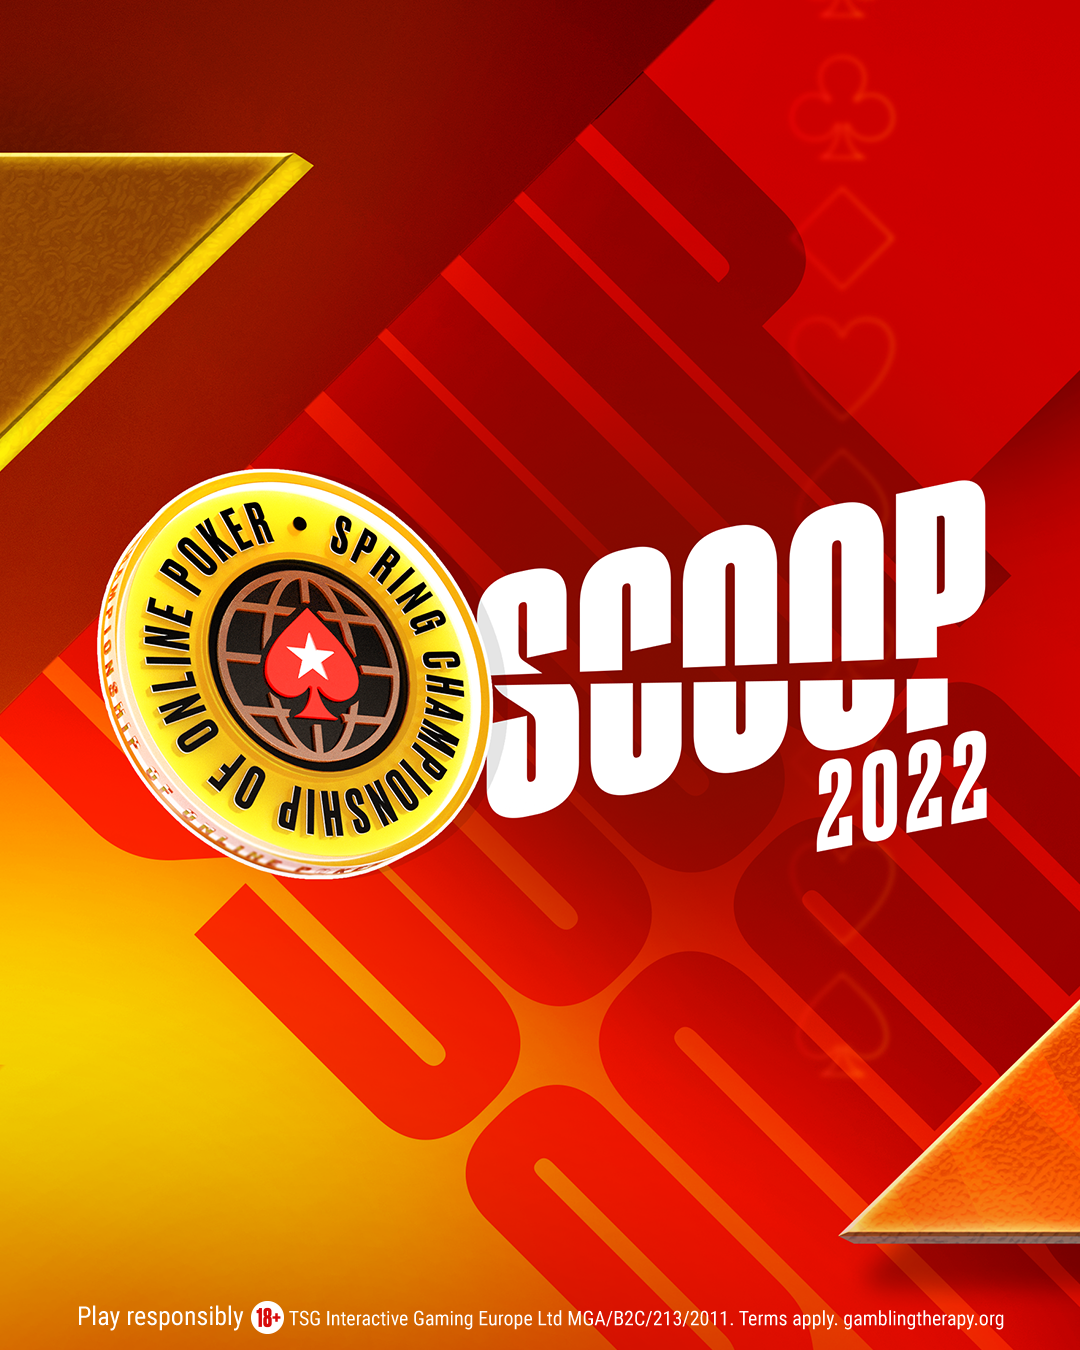 SCOOP 2022 vertical banner